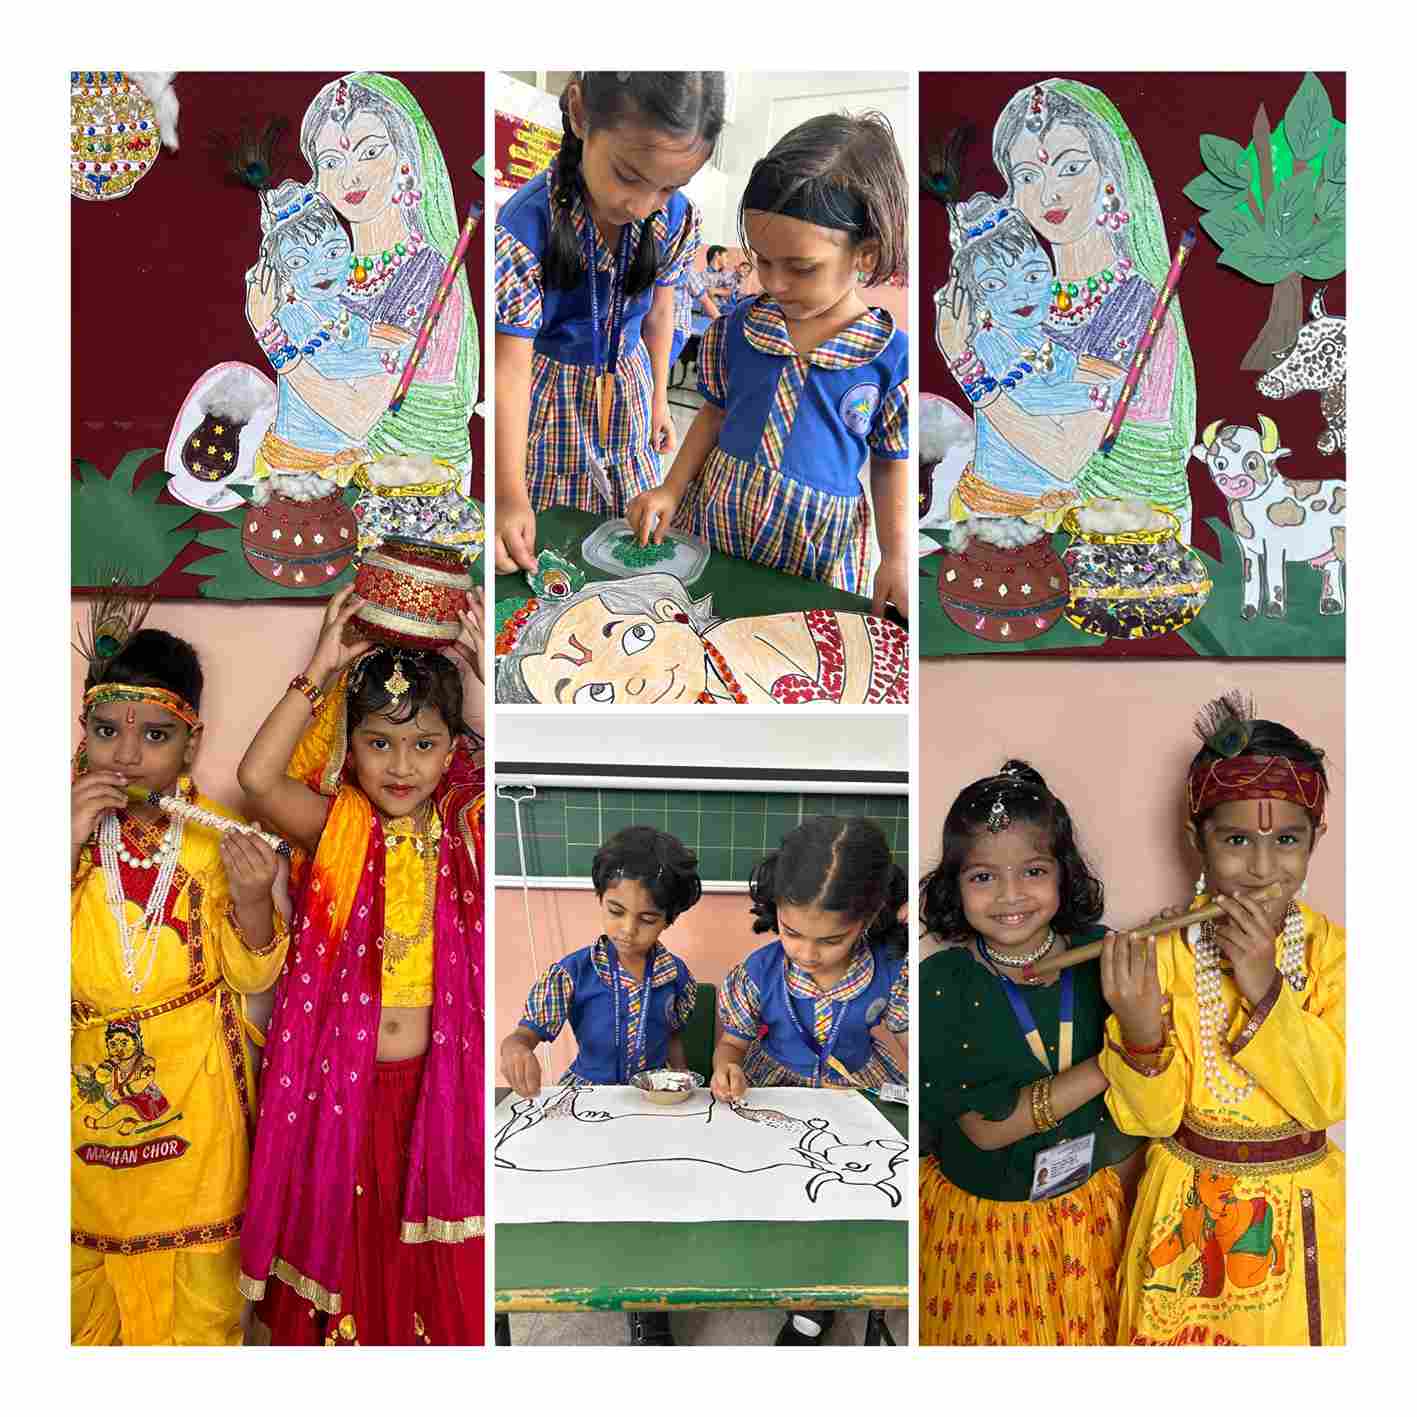 Celebrating Raksha Bandhan